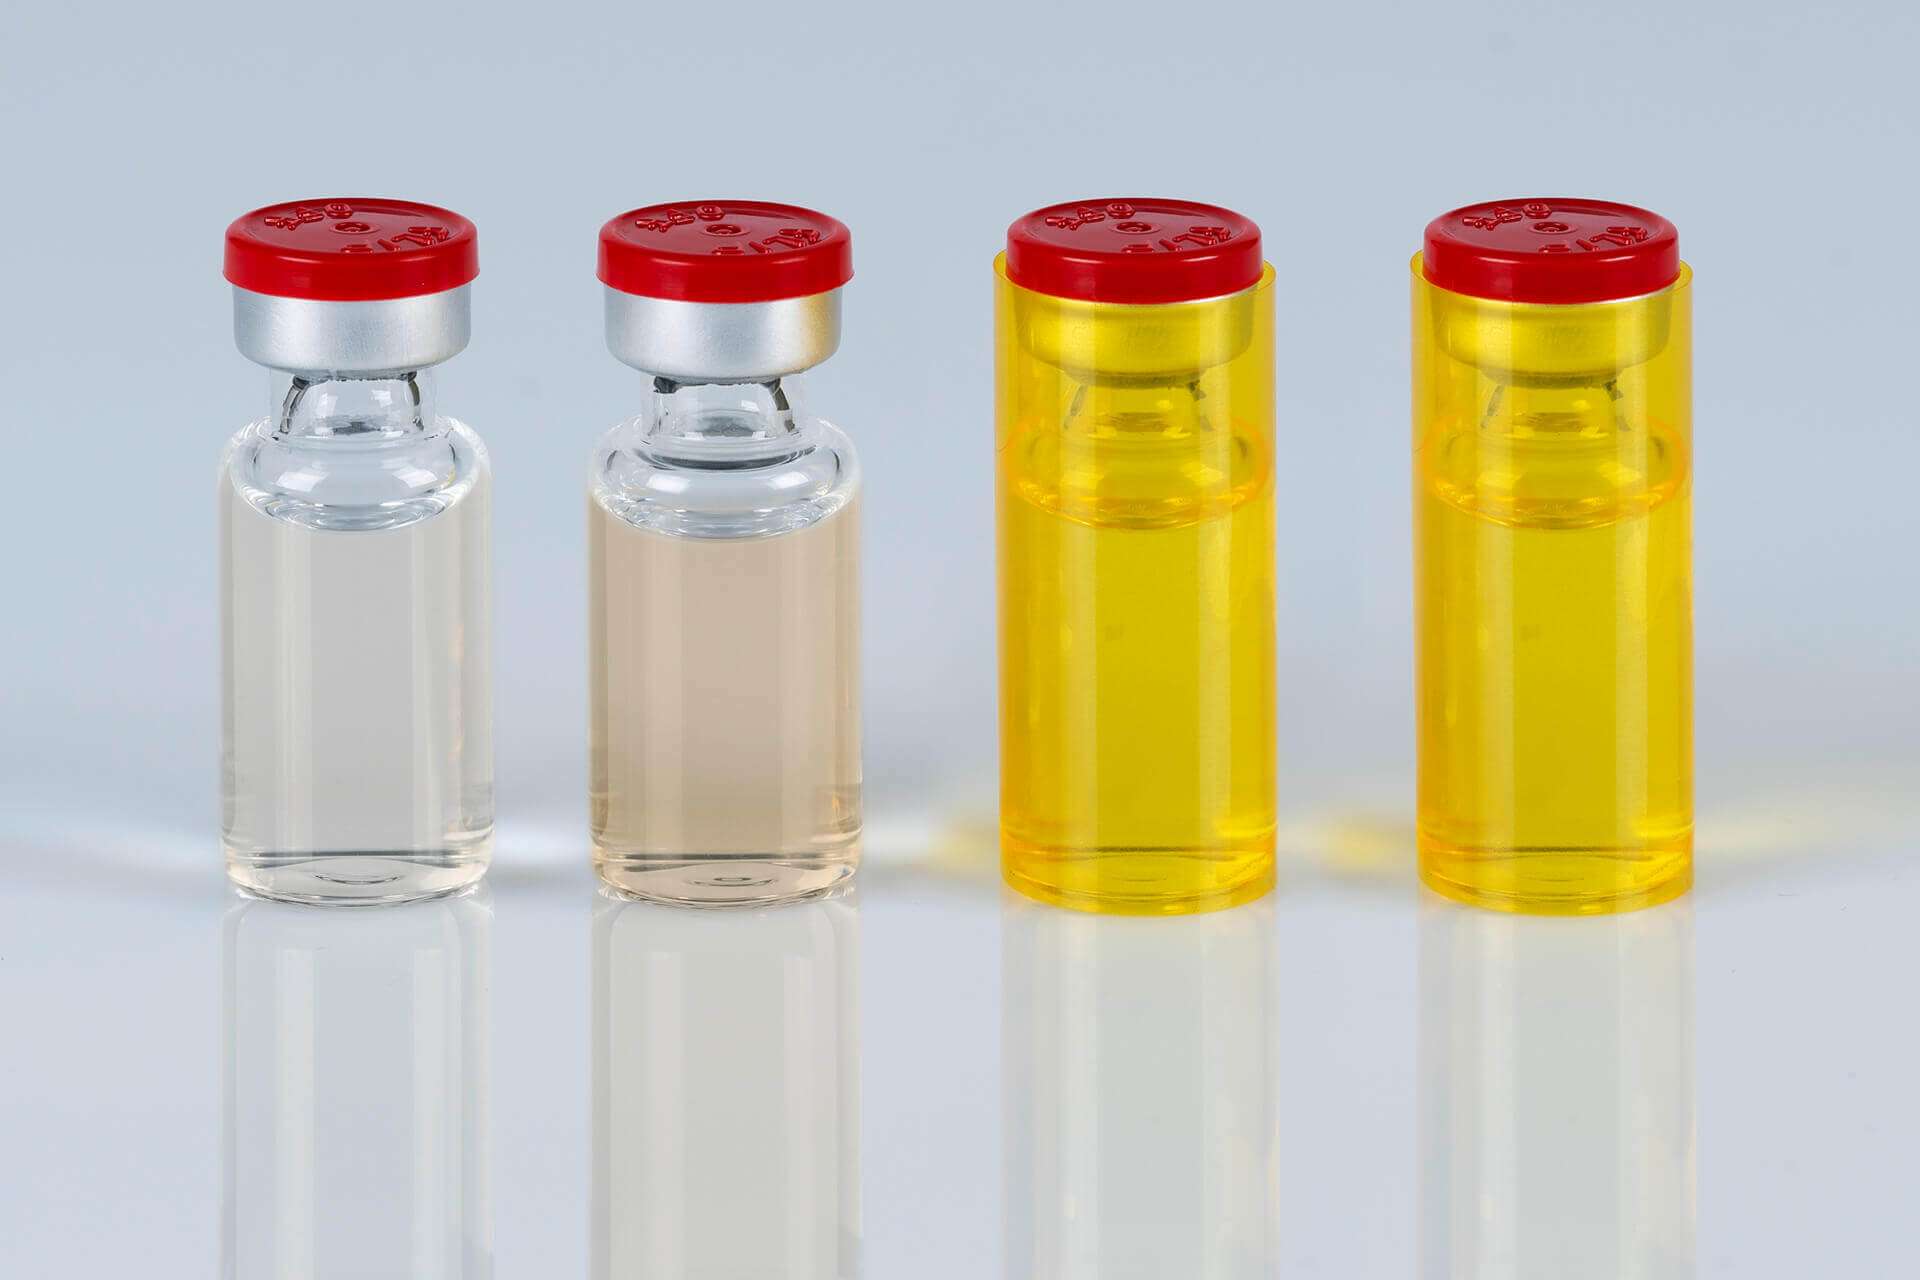 Das halbtransparente gelbe Verblindungslabel verhindert, dass sich Verum und Placebo in der klinischen Studie unterscheiden lassen.